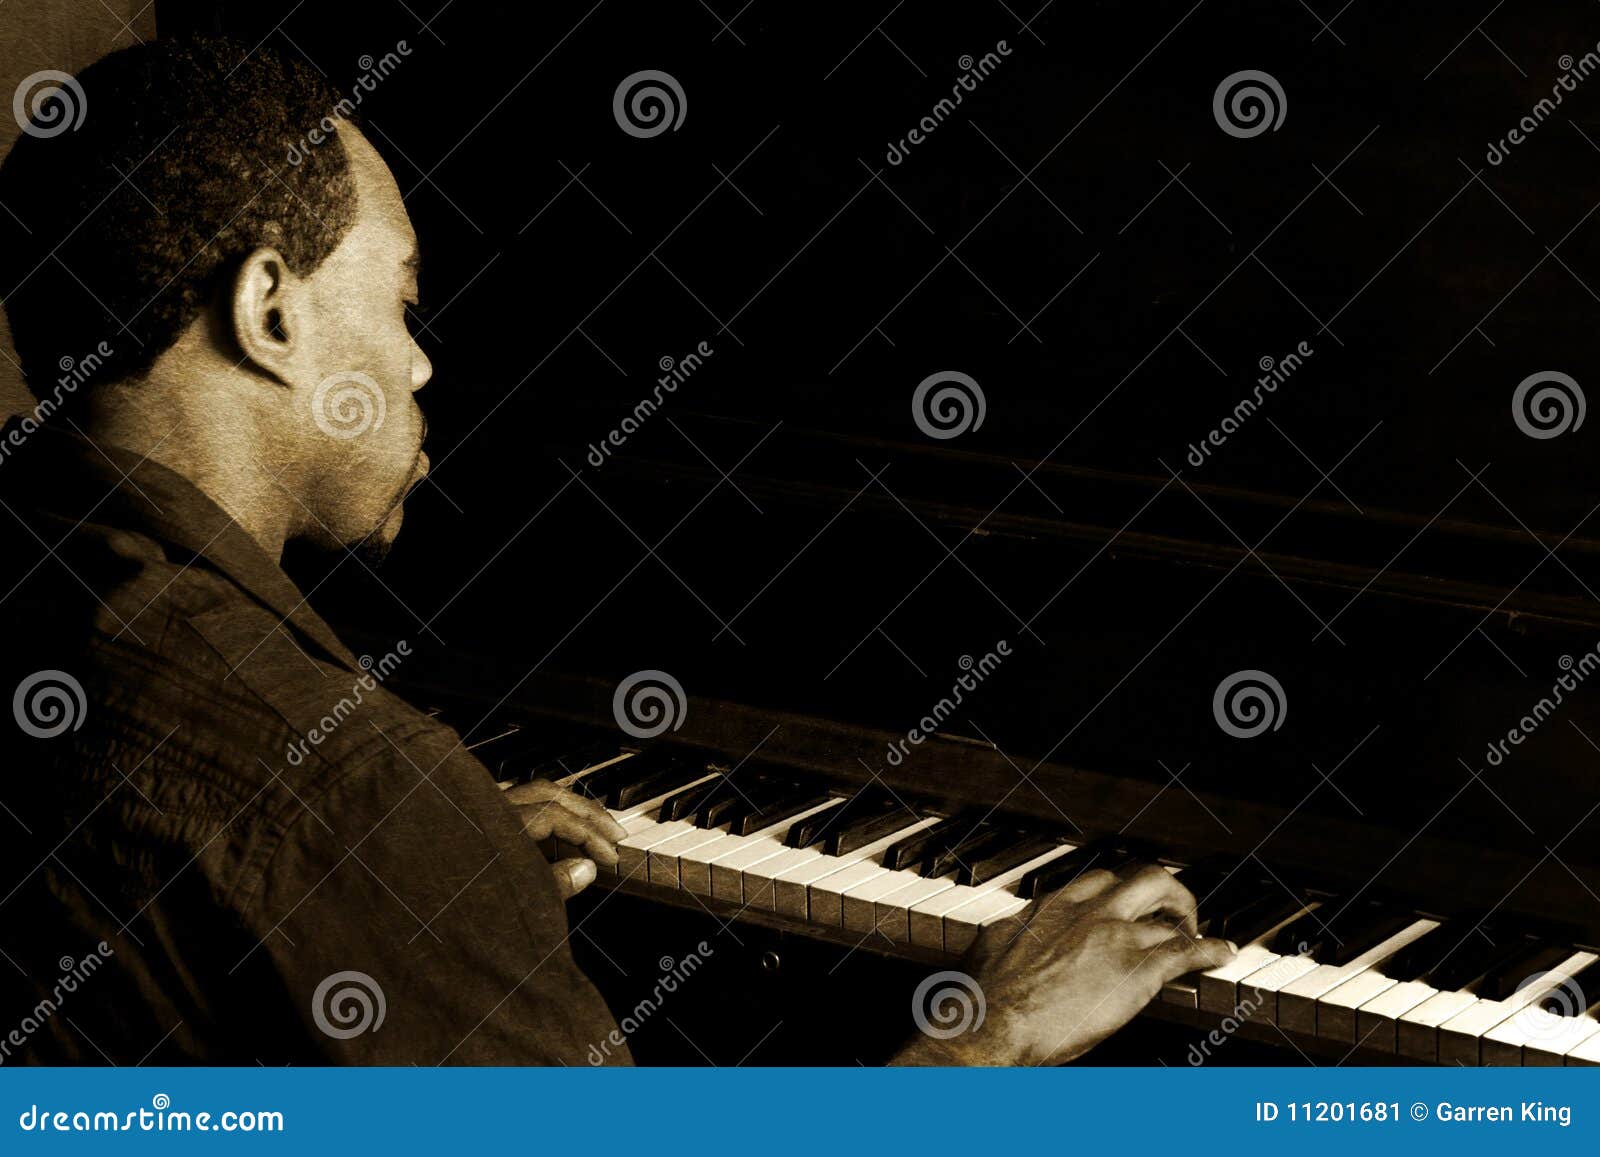 jazz piano player